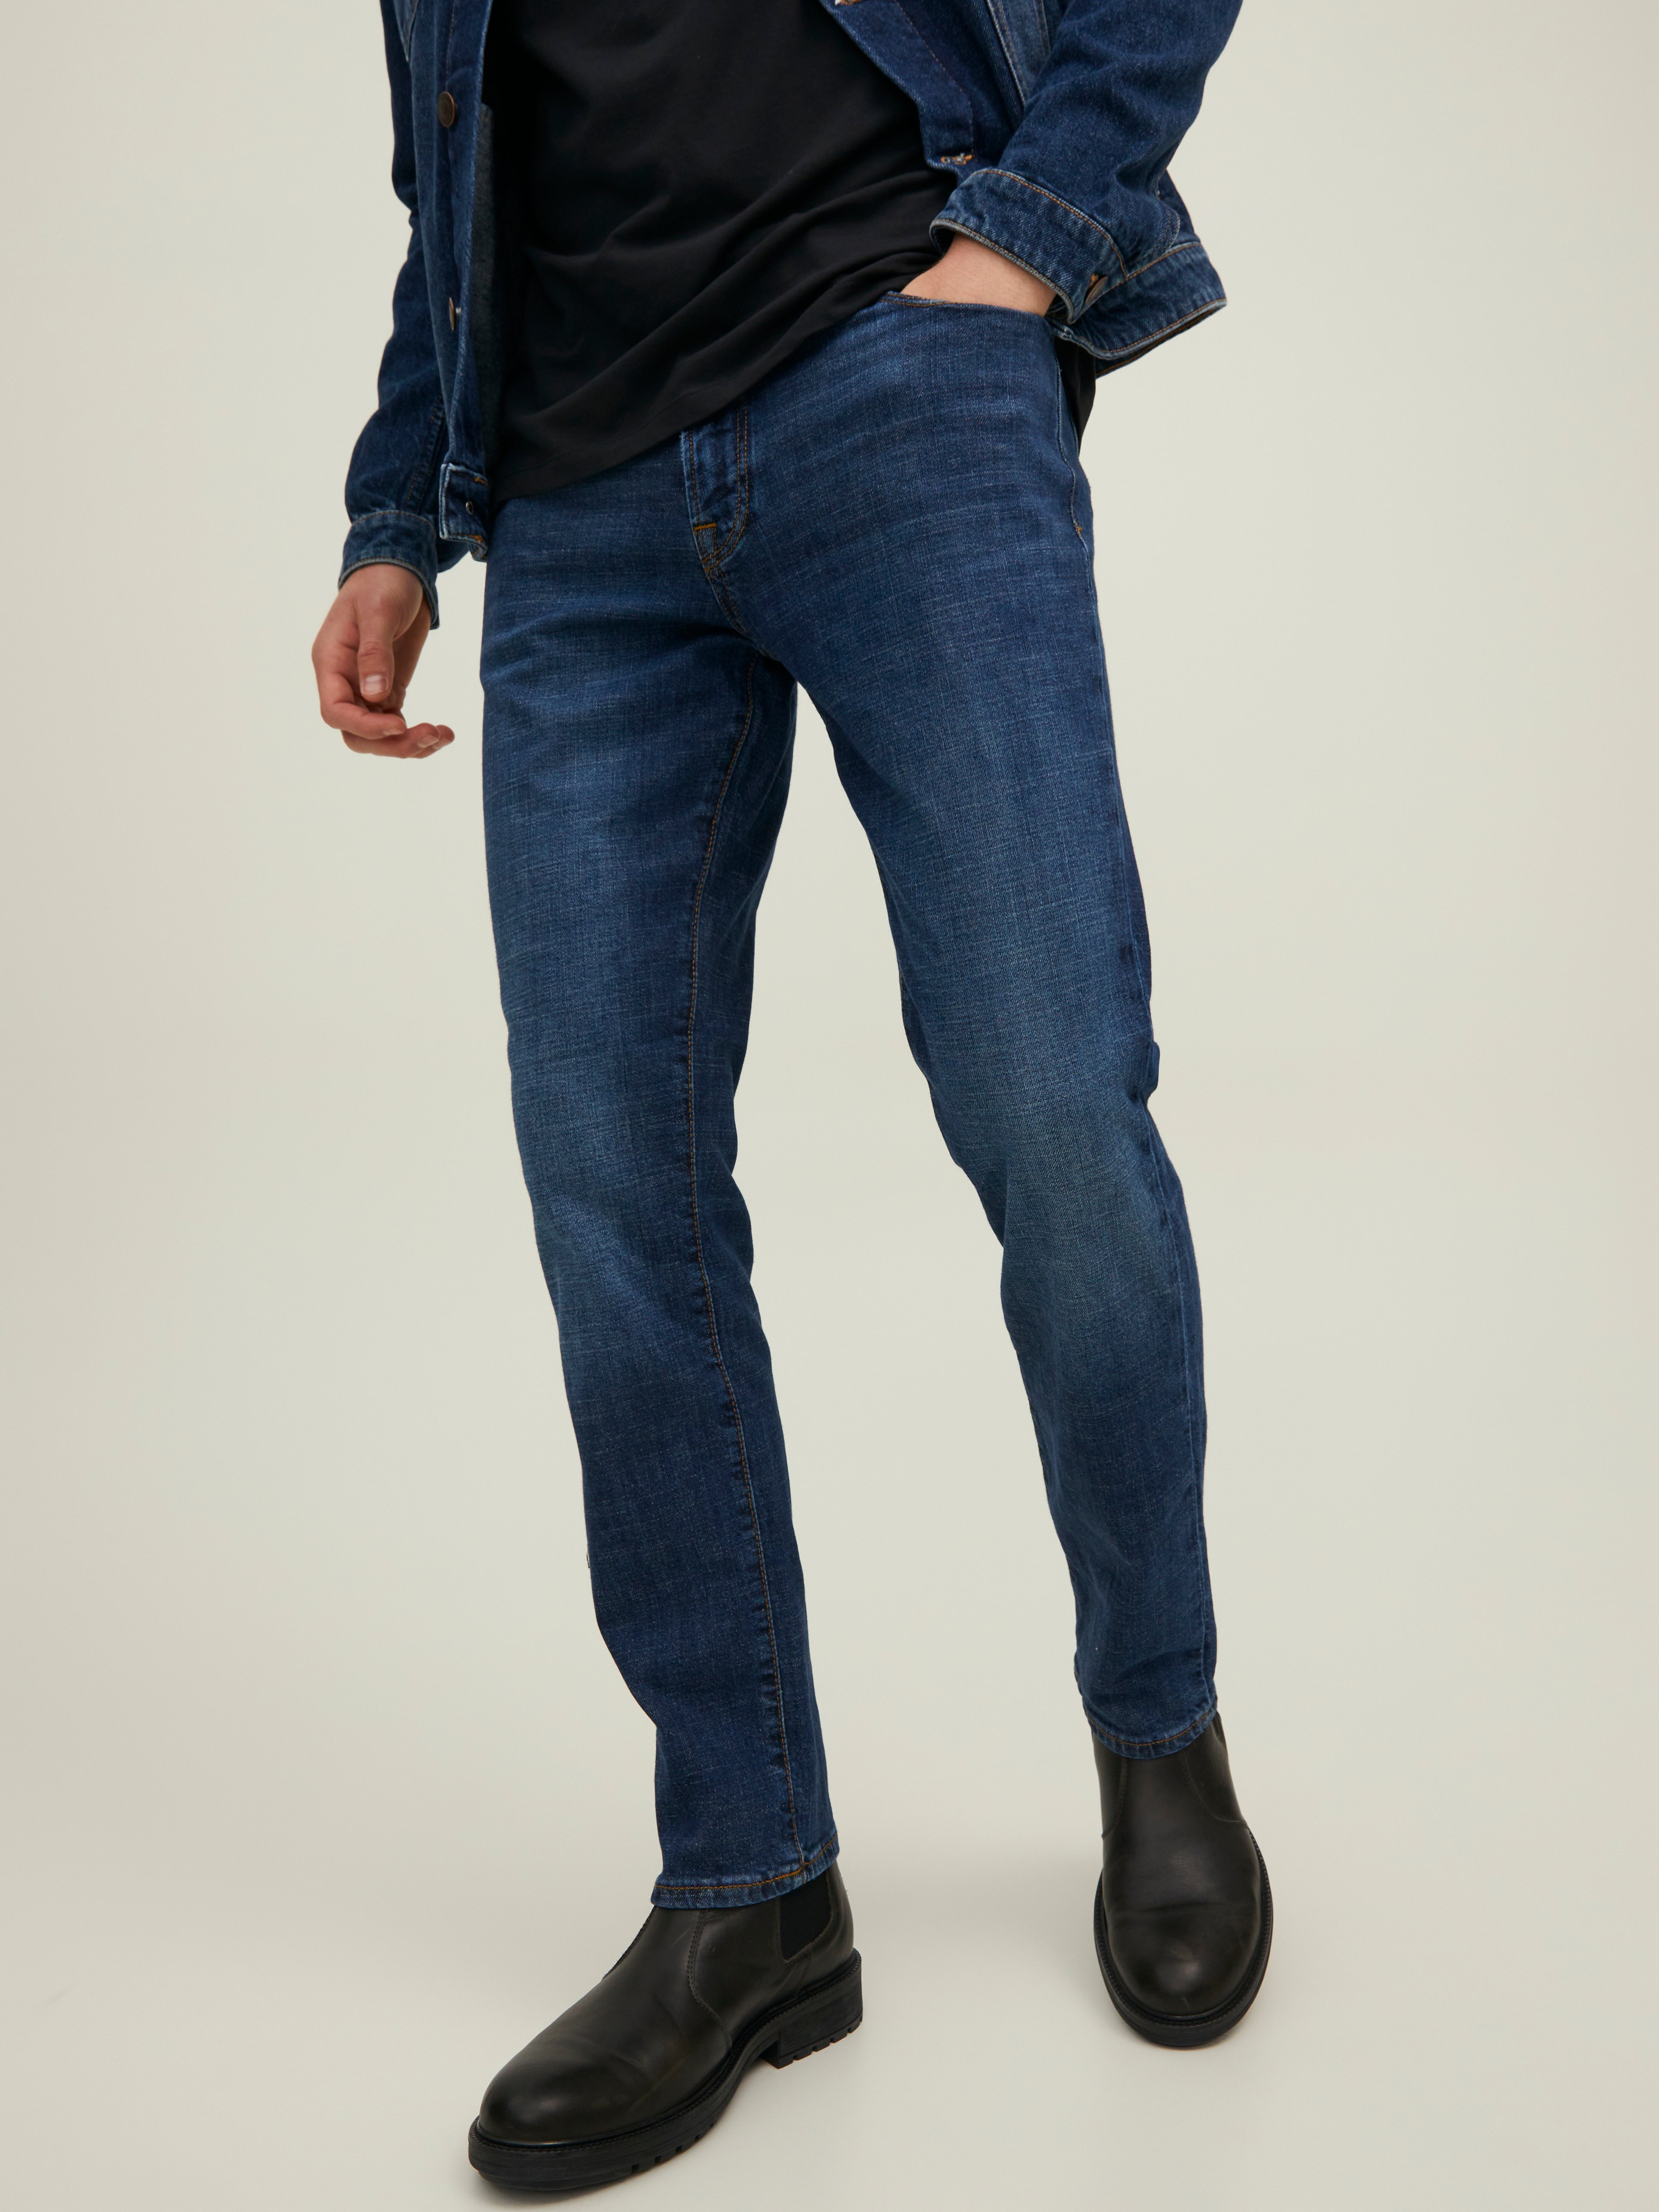 Dunkelblau 38 Rabatt 64 % Jack & Jones Bootcut jeans HERREN Jeans Basisch 